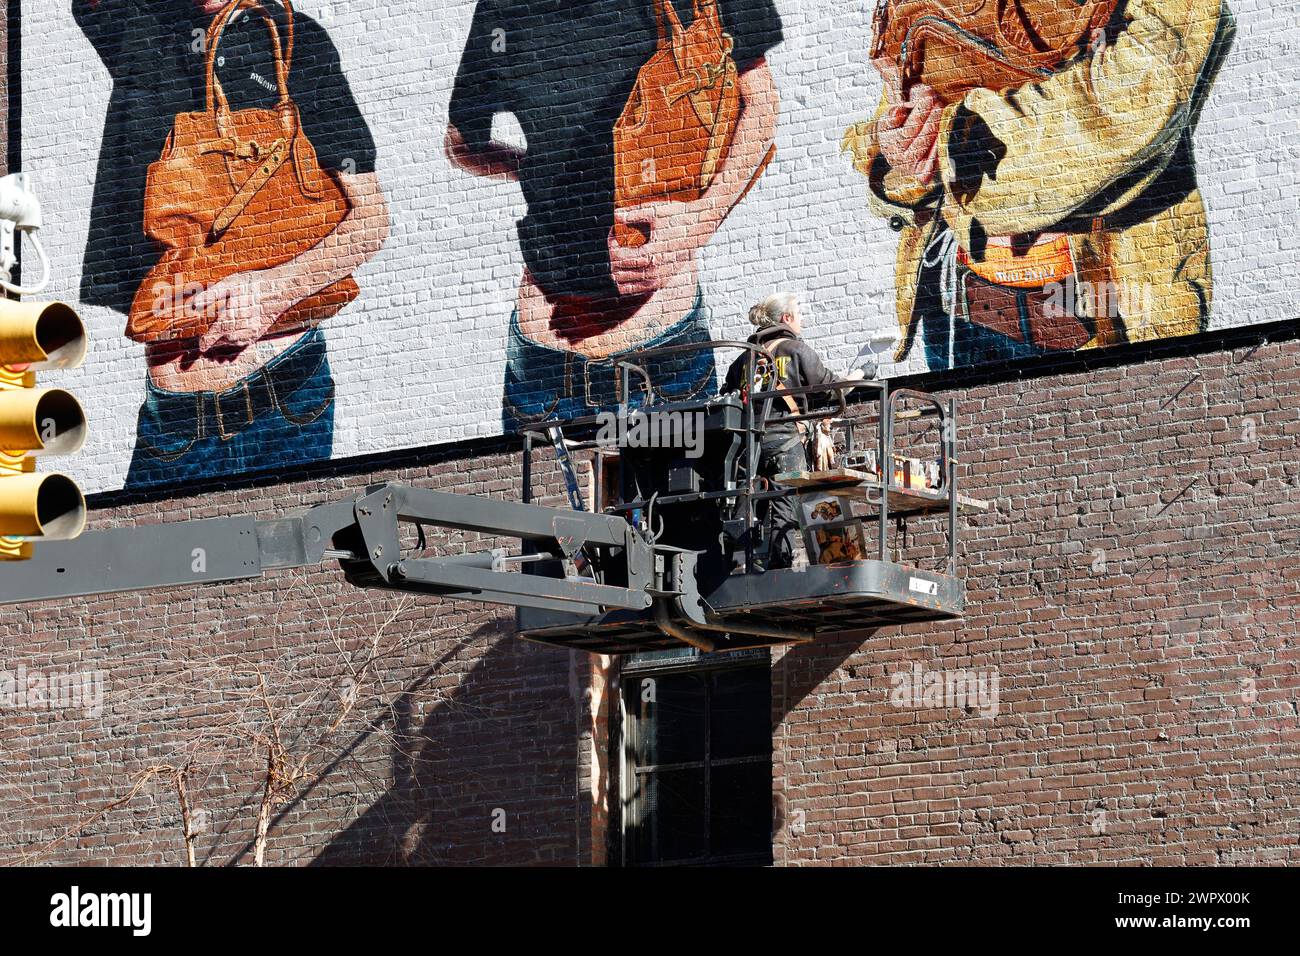 Un artiste commercial, peintres sur un boom articulé soulever la main peignant une publicité sur le côté d'un bâtiment à New York. Banque D'Images